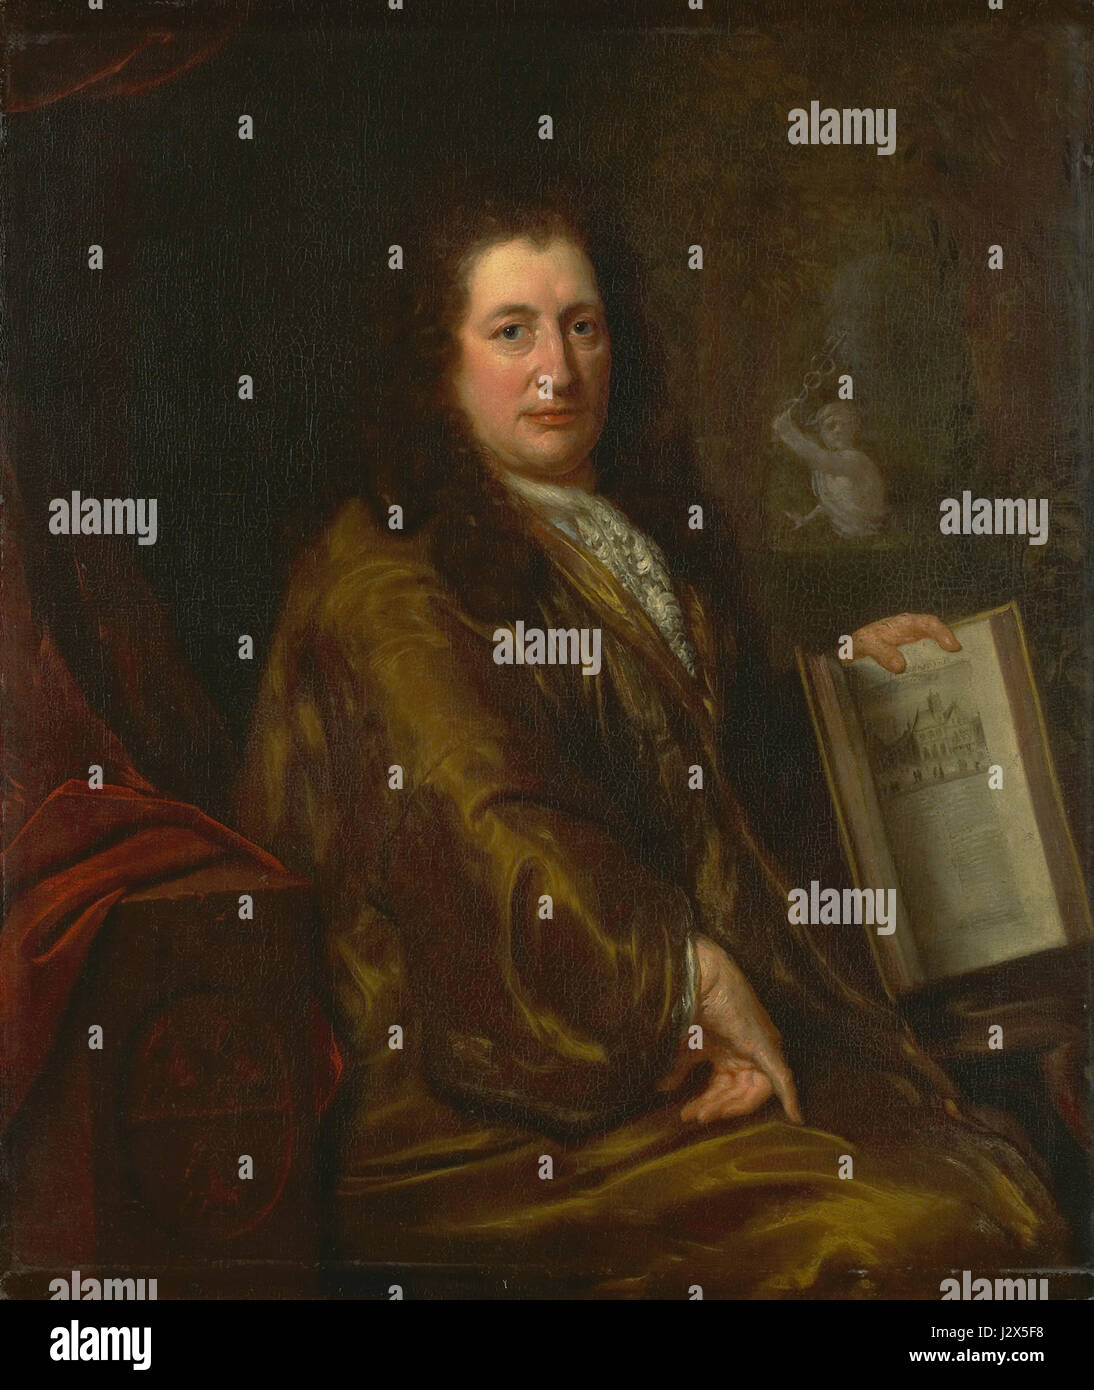 Casparus Commelin (1636-93). Boekverkoper, courantier En Stadshistorieschrijver met Zijn 'Beschrijvinghe van Amsterdam' van 1693 Rijksmuseum SK-C-517 Stockfoto